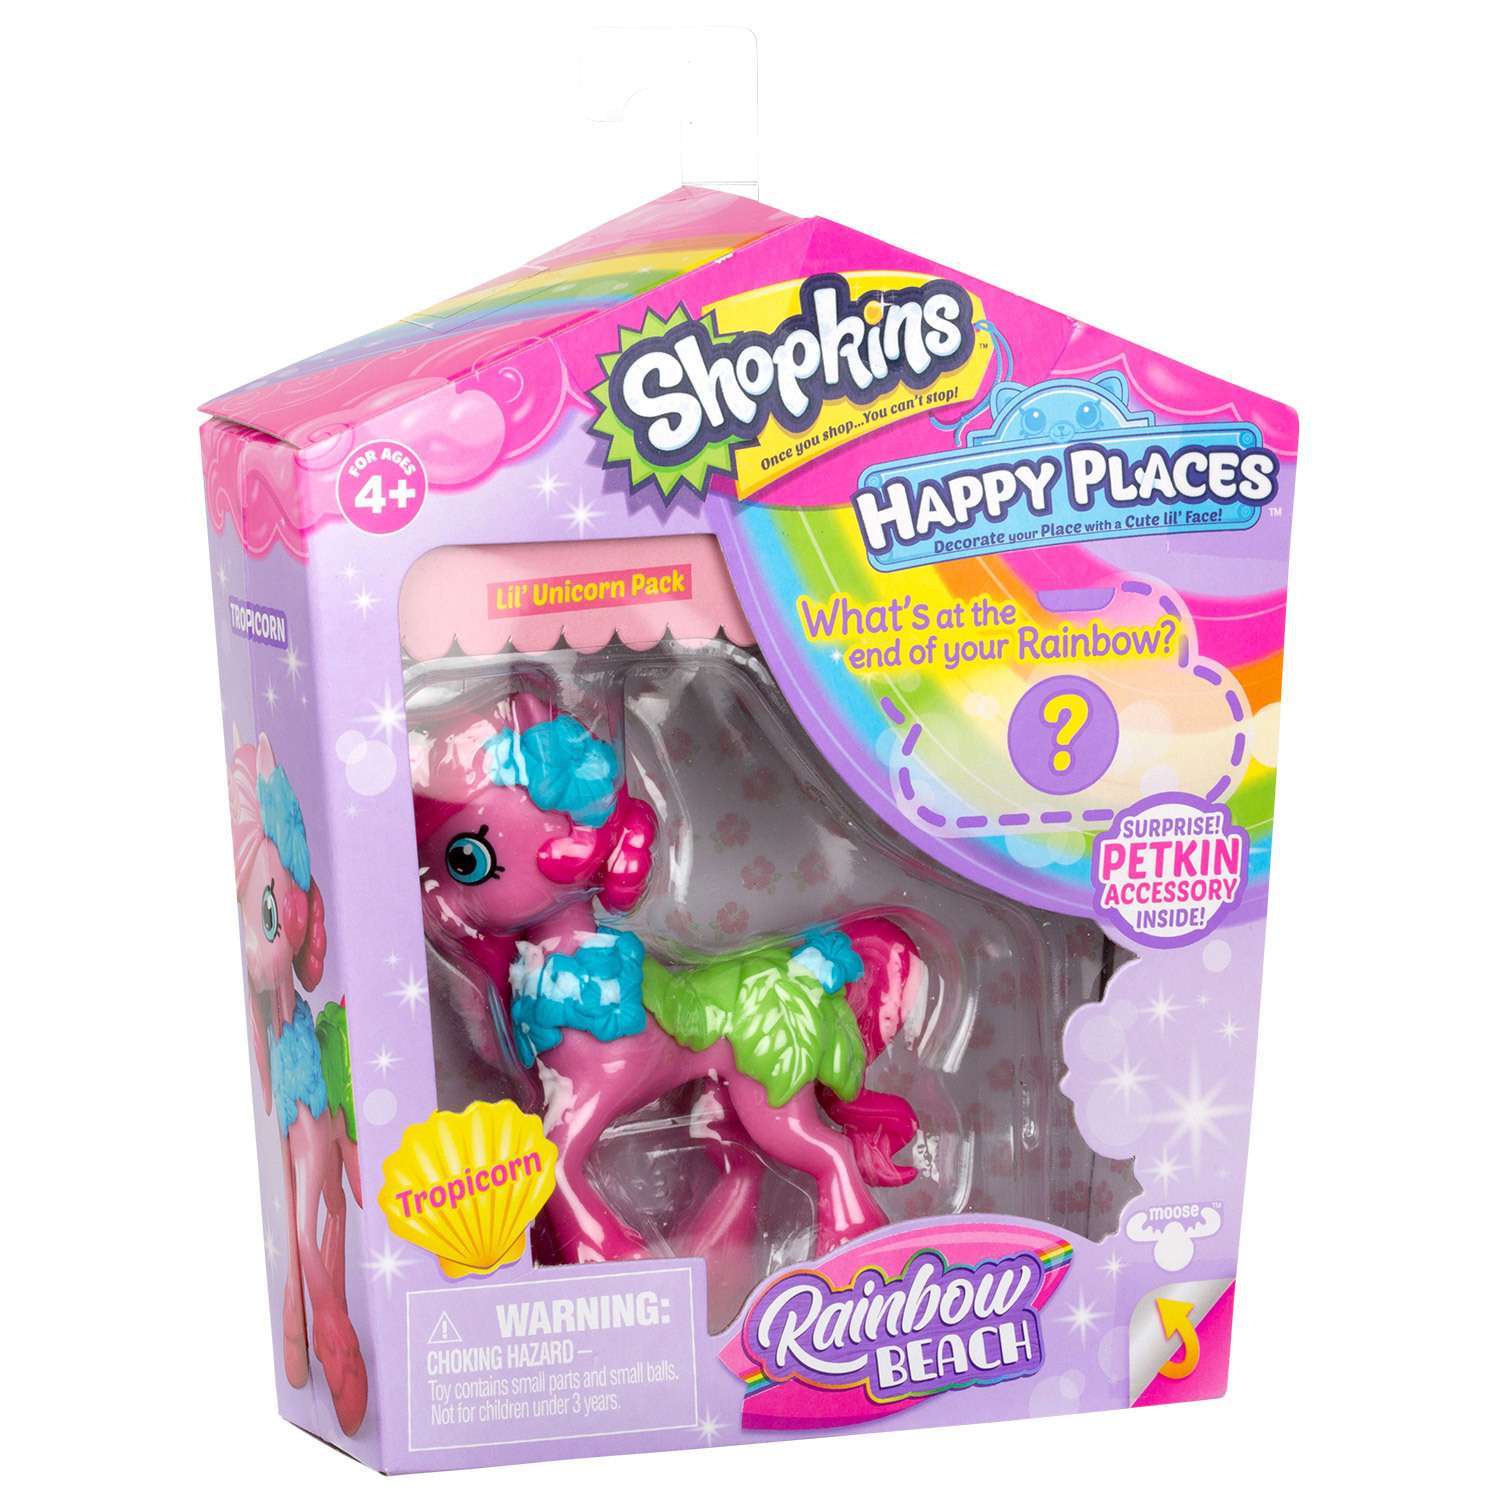 Игрушка Happy Places Shopkins с пони Тропикорн 56847 в непрозрачной упаковке (Сюрприз) - фото 3